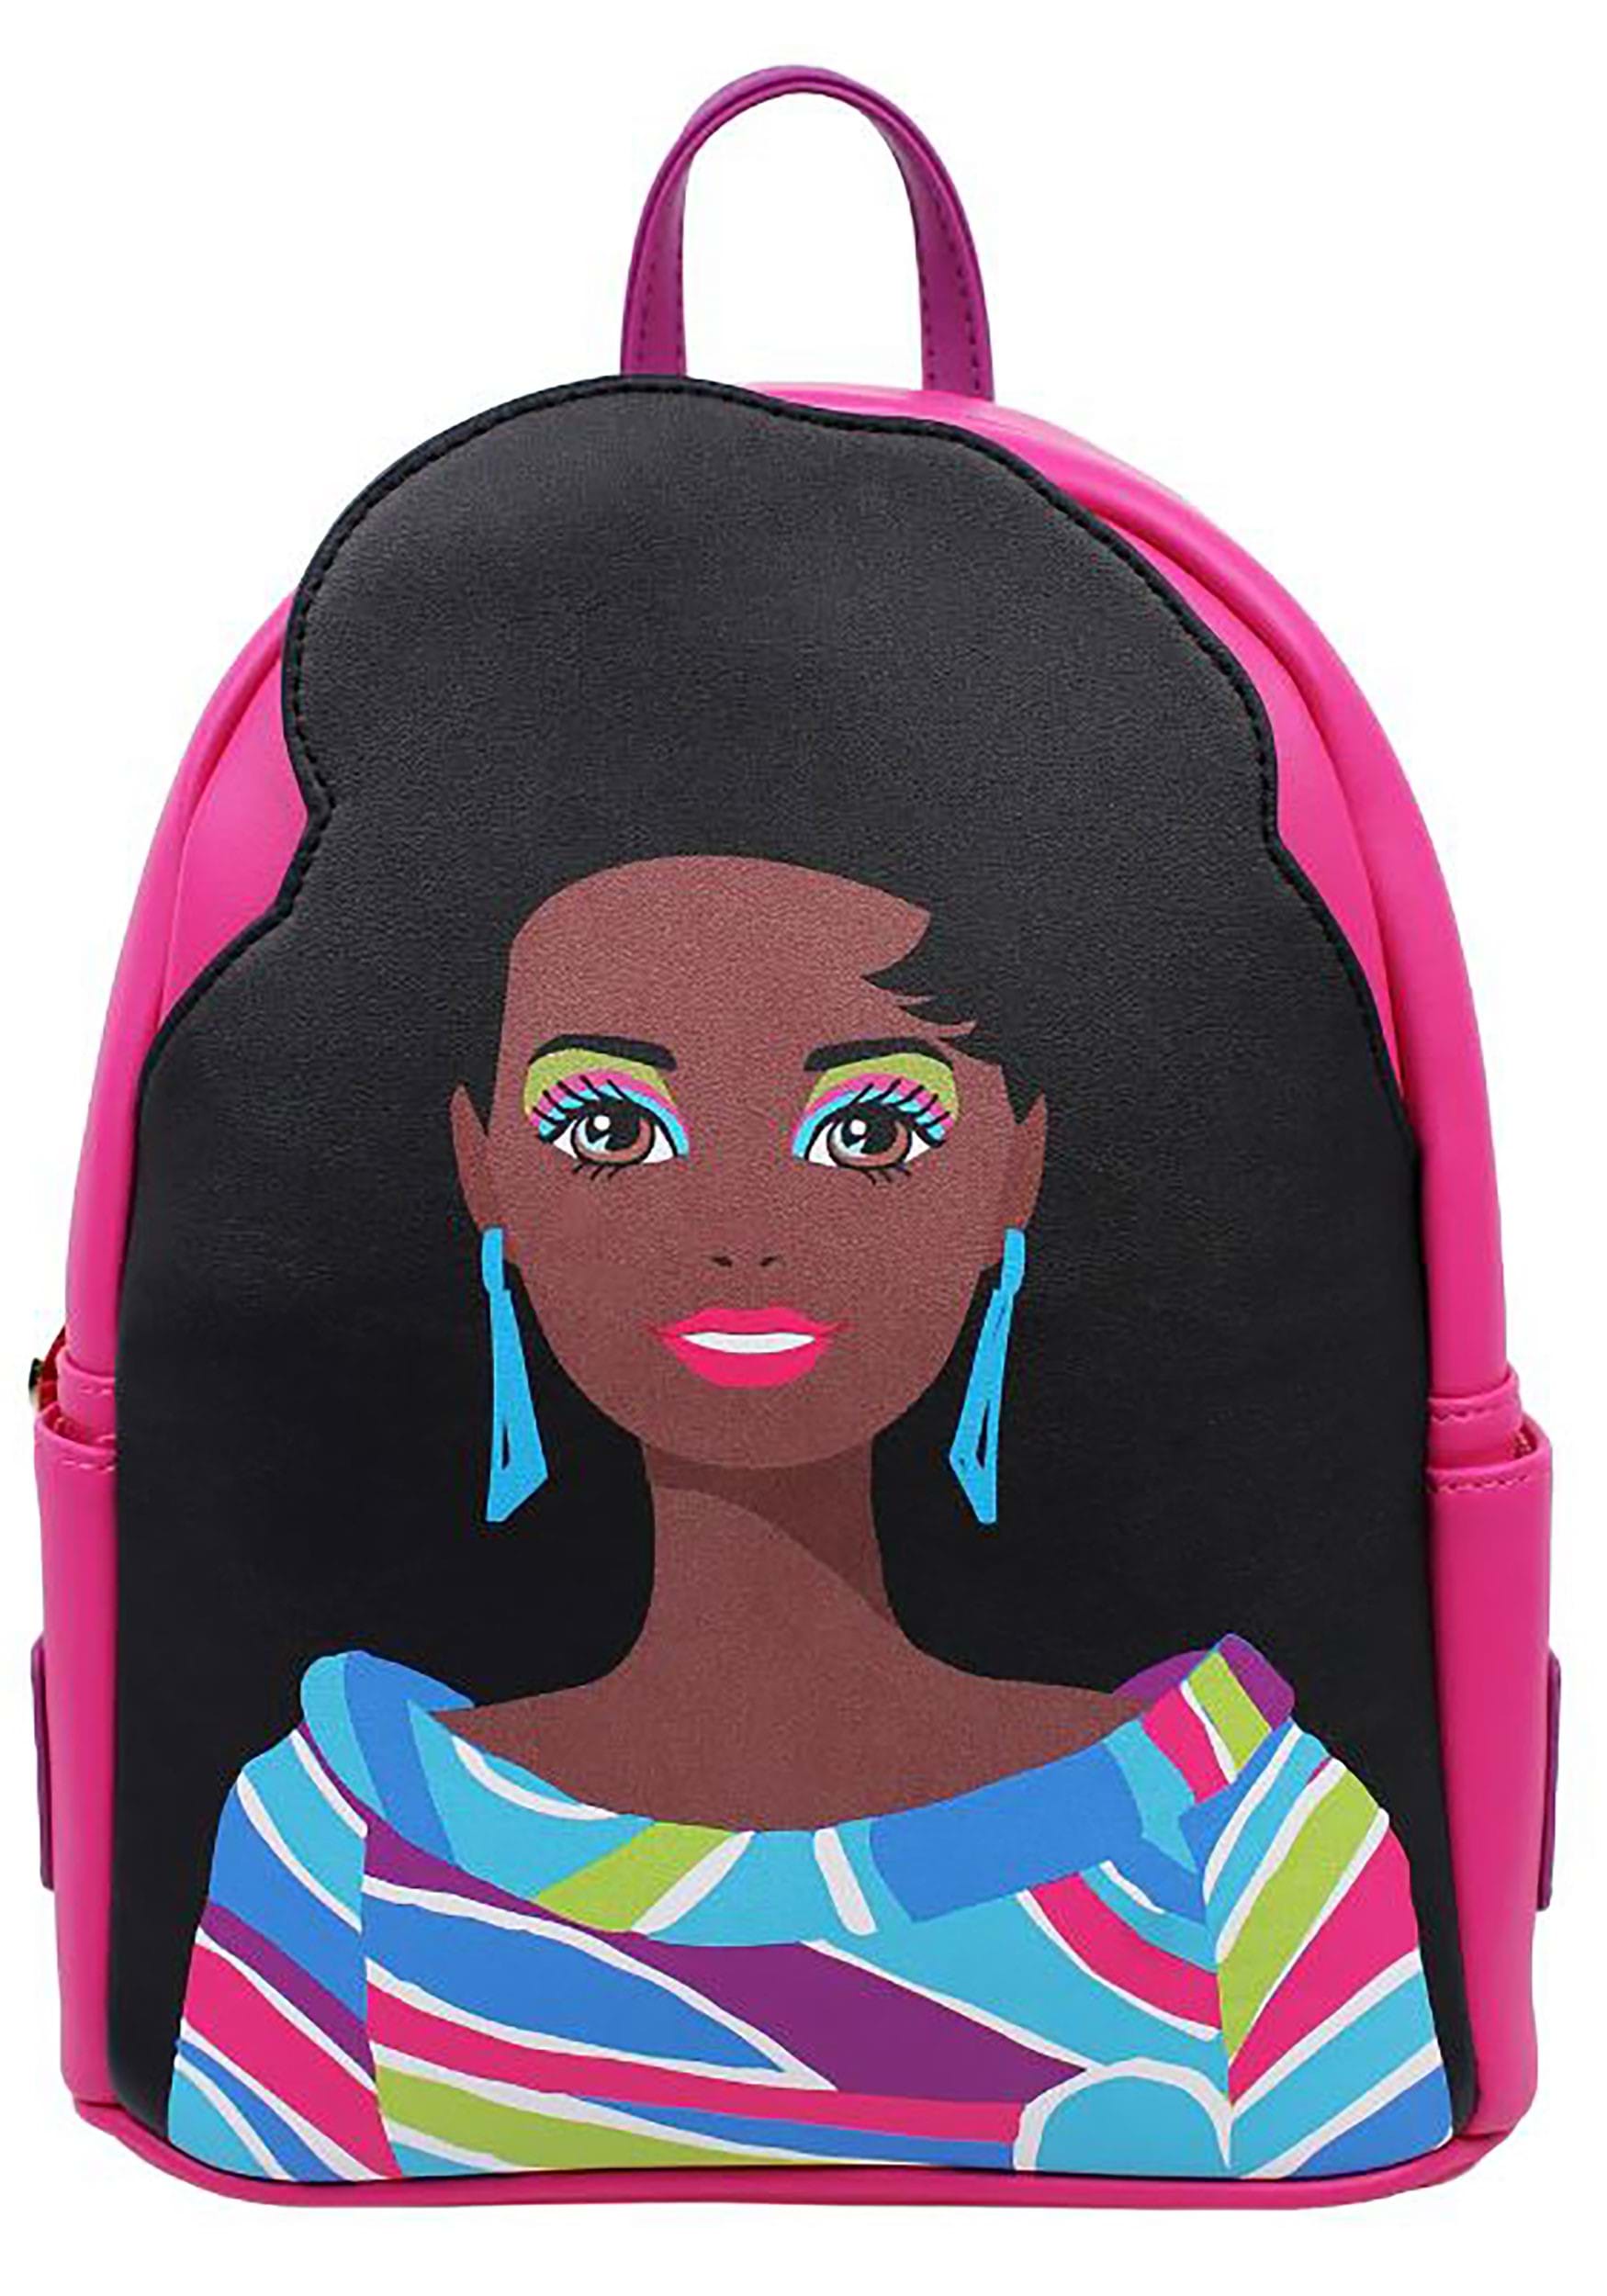 Totally Hair Barbie Black Mini Backpack By Cakeworthy , Cakeworthy Barbie